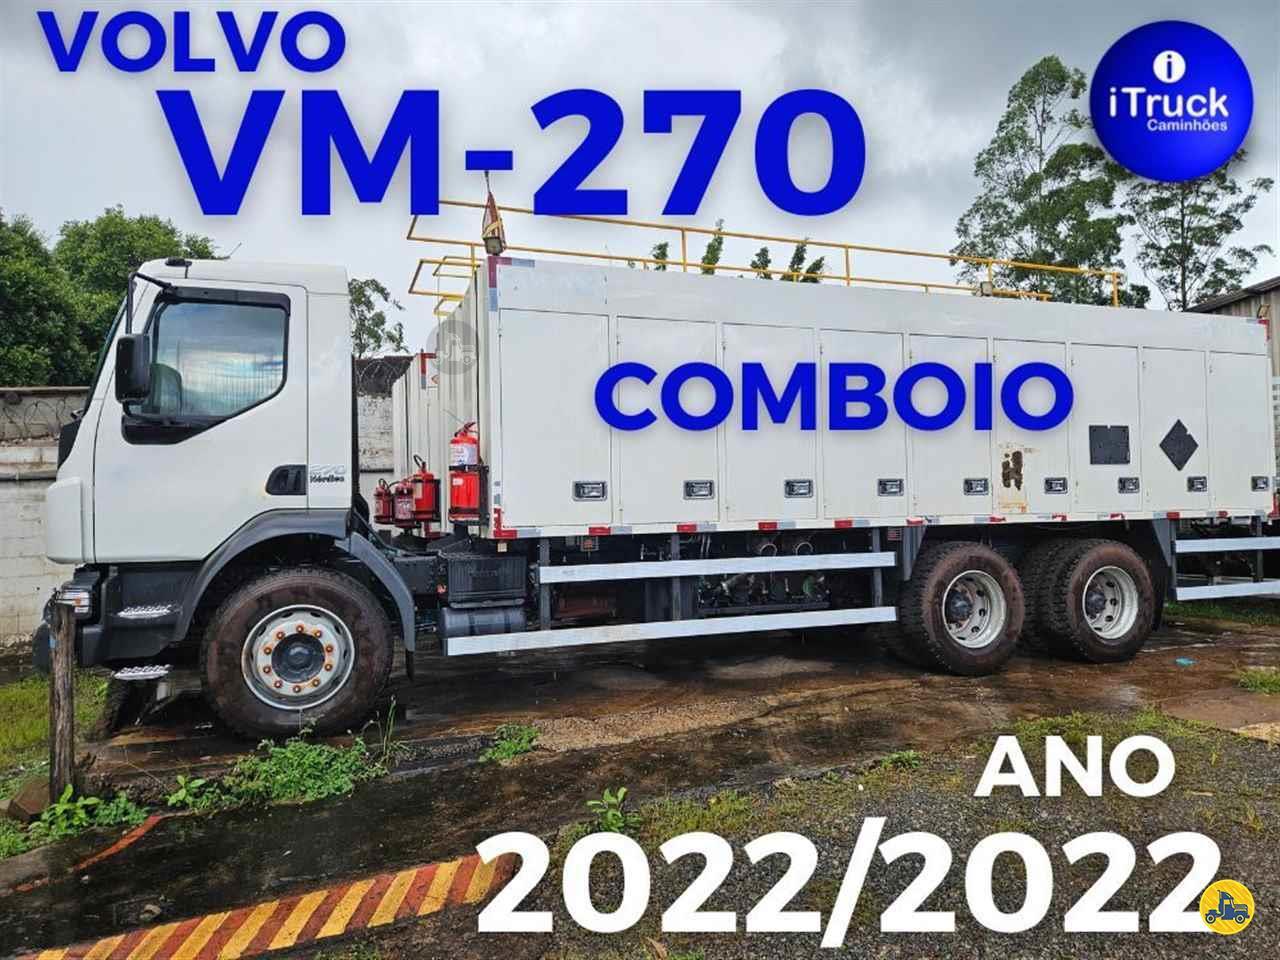 VOLVO VM 270